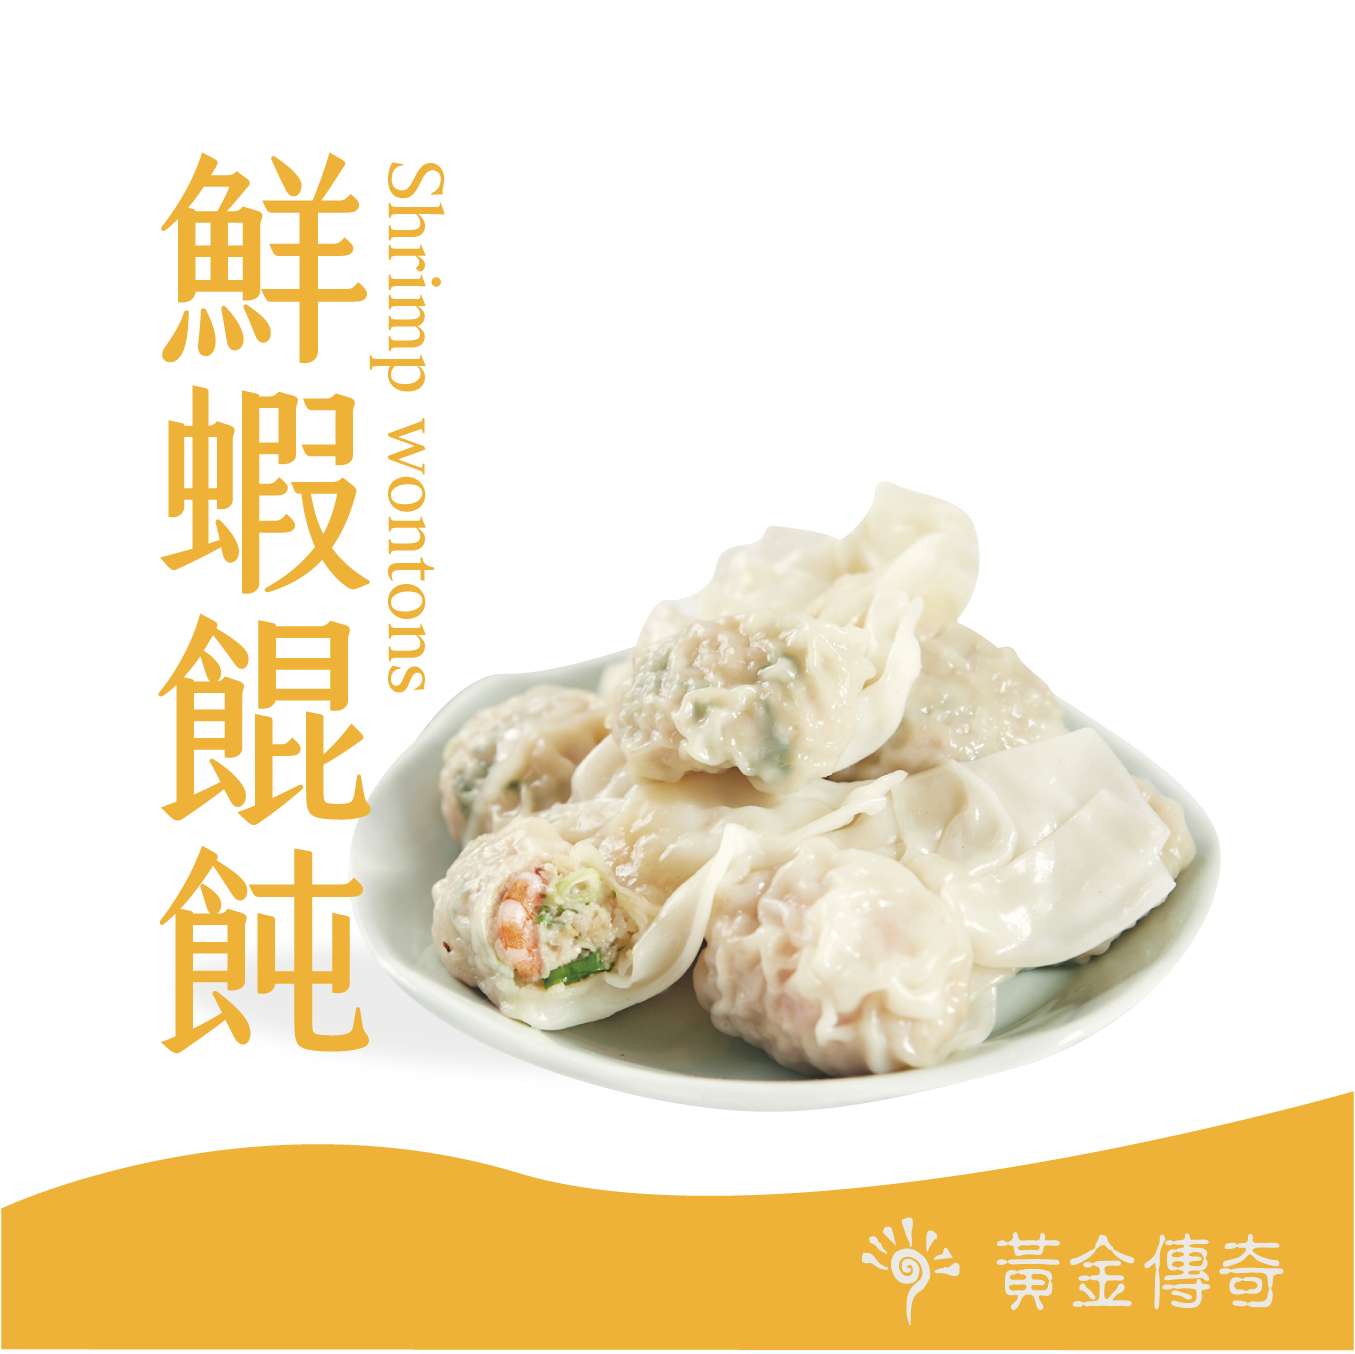 【黃金傳奇】手工包製餛飩-鮮蝦餛飩(16顆/包)